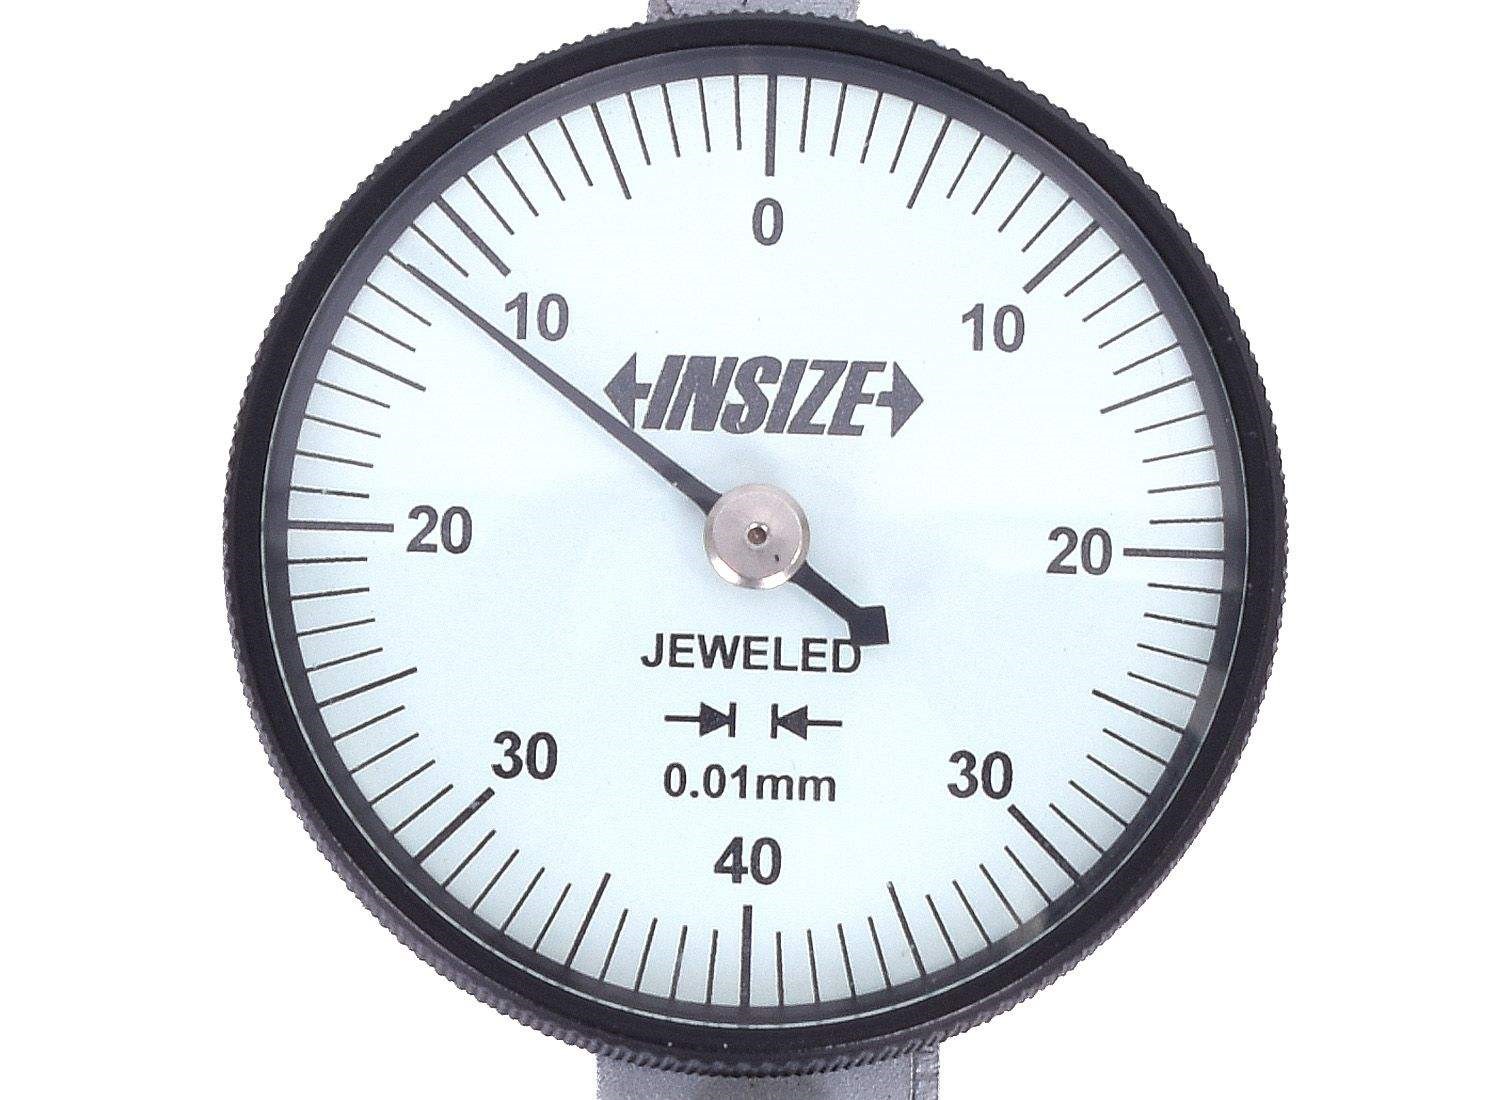 ساعت اندیکاتور شیطانکی اینسایز مدل 08-2380